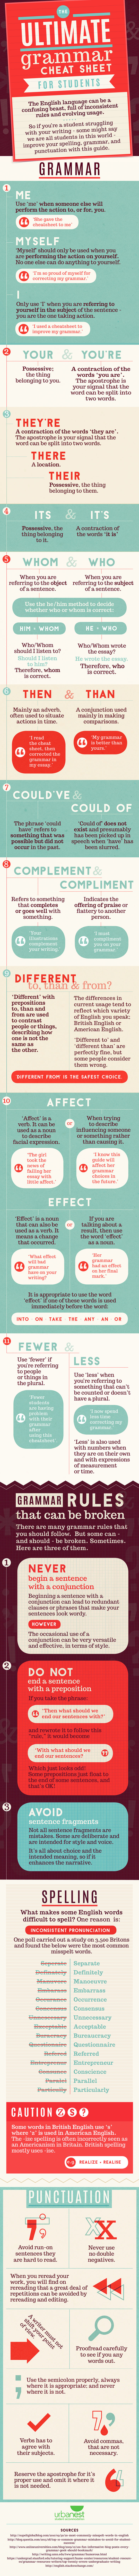 grammar-cheat-sheet-infographic.jpg